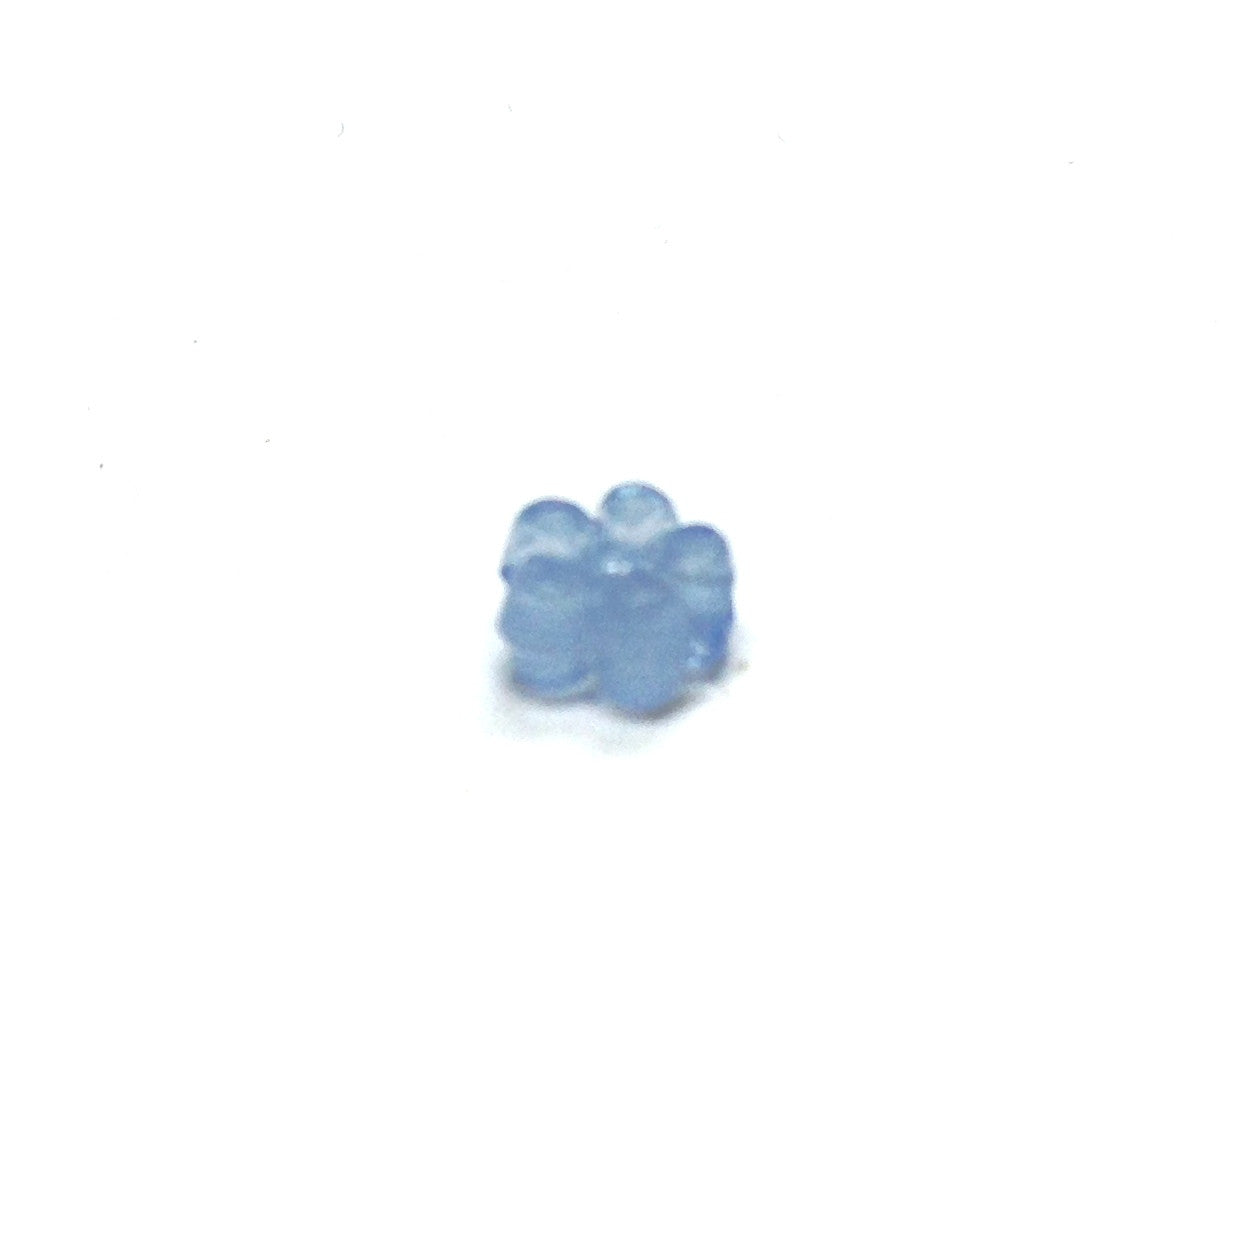 5MM Light Blue Flower Bead (500 pieces)